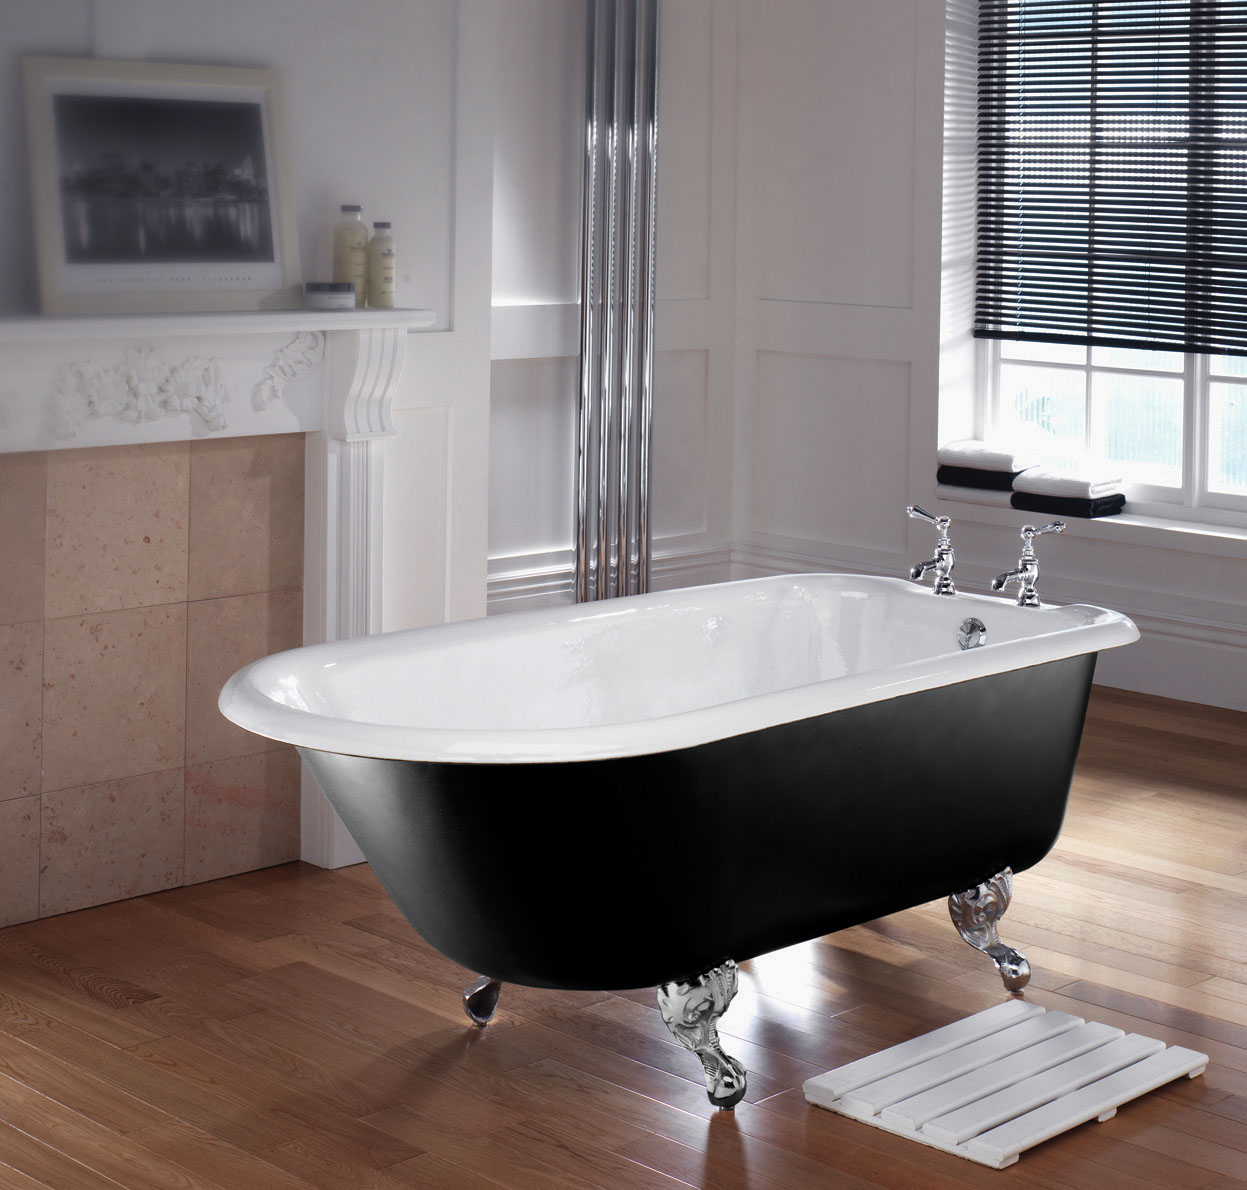 Bath tub manufacturers